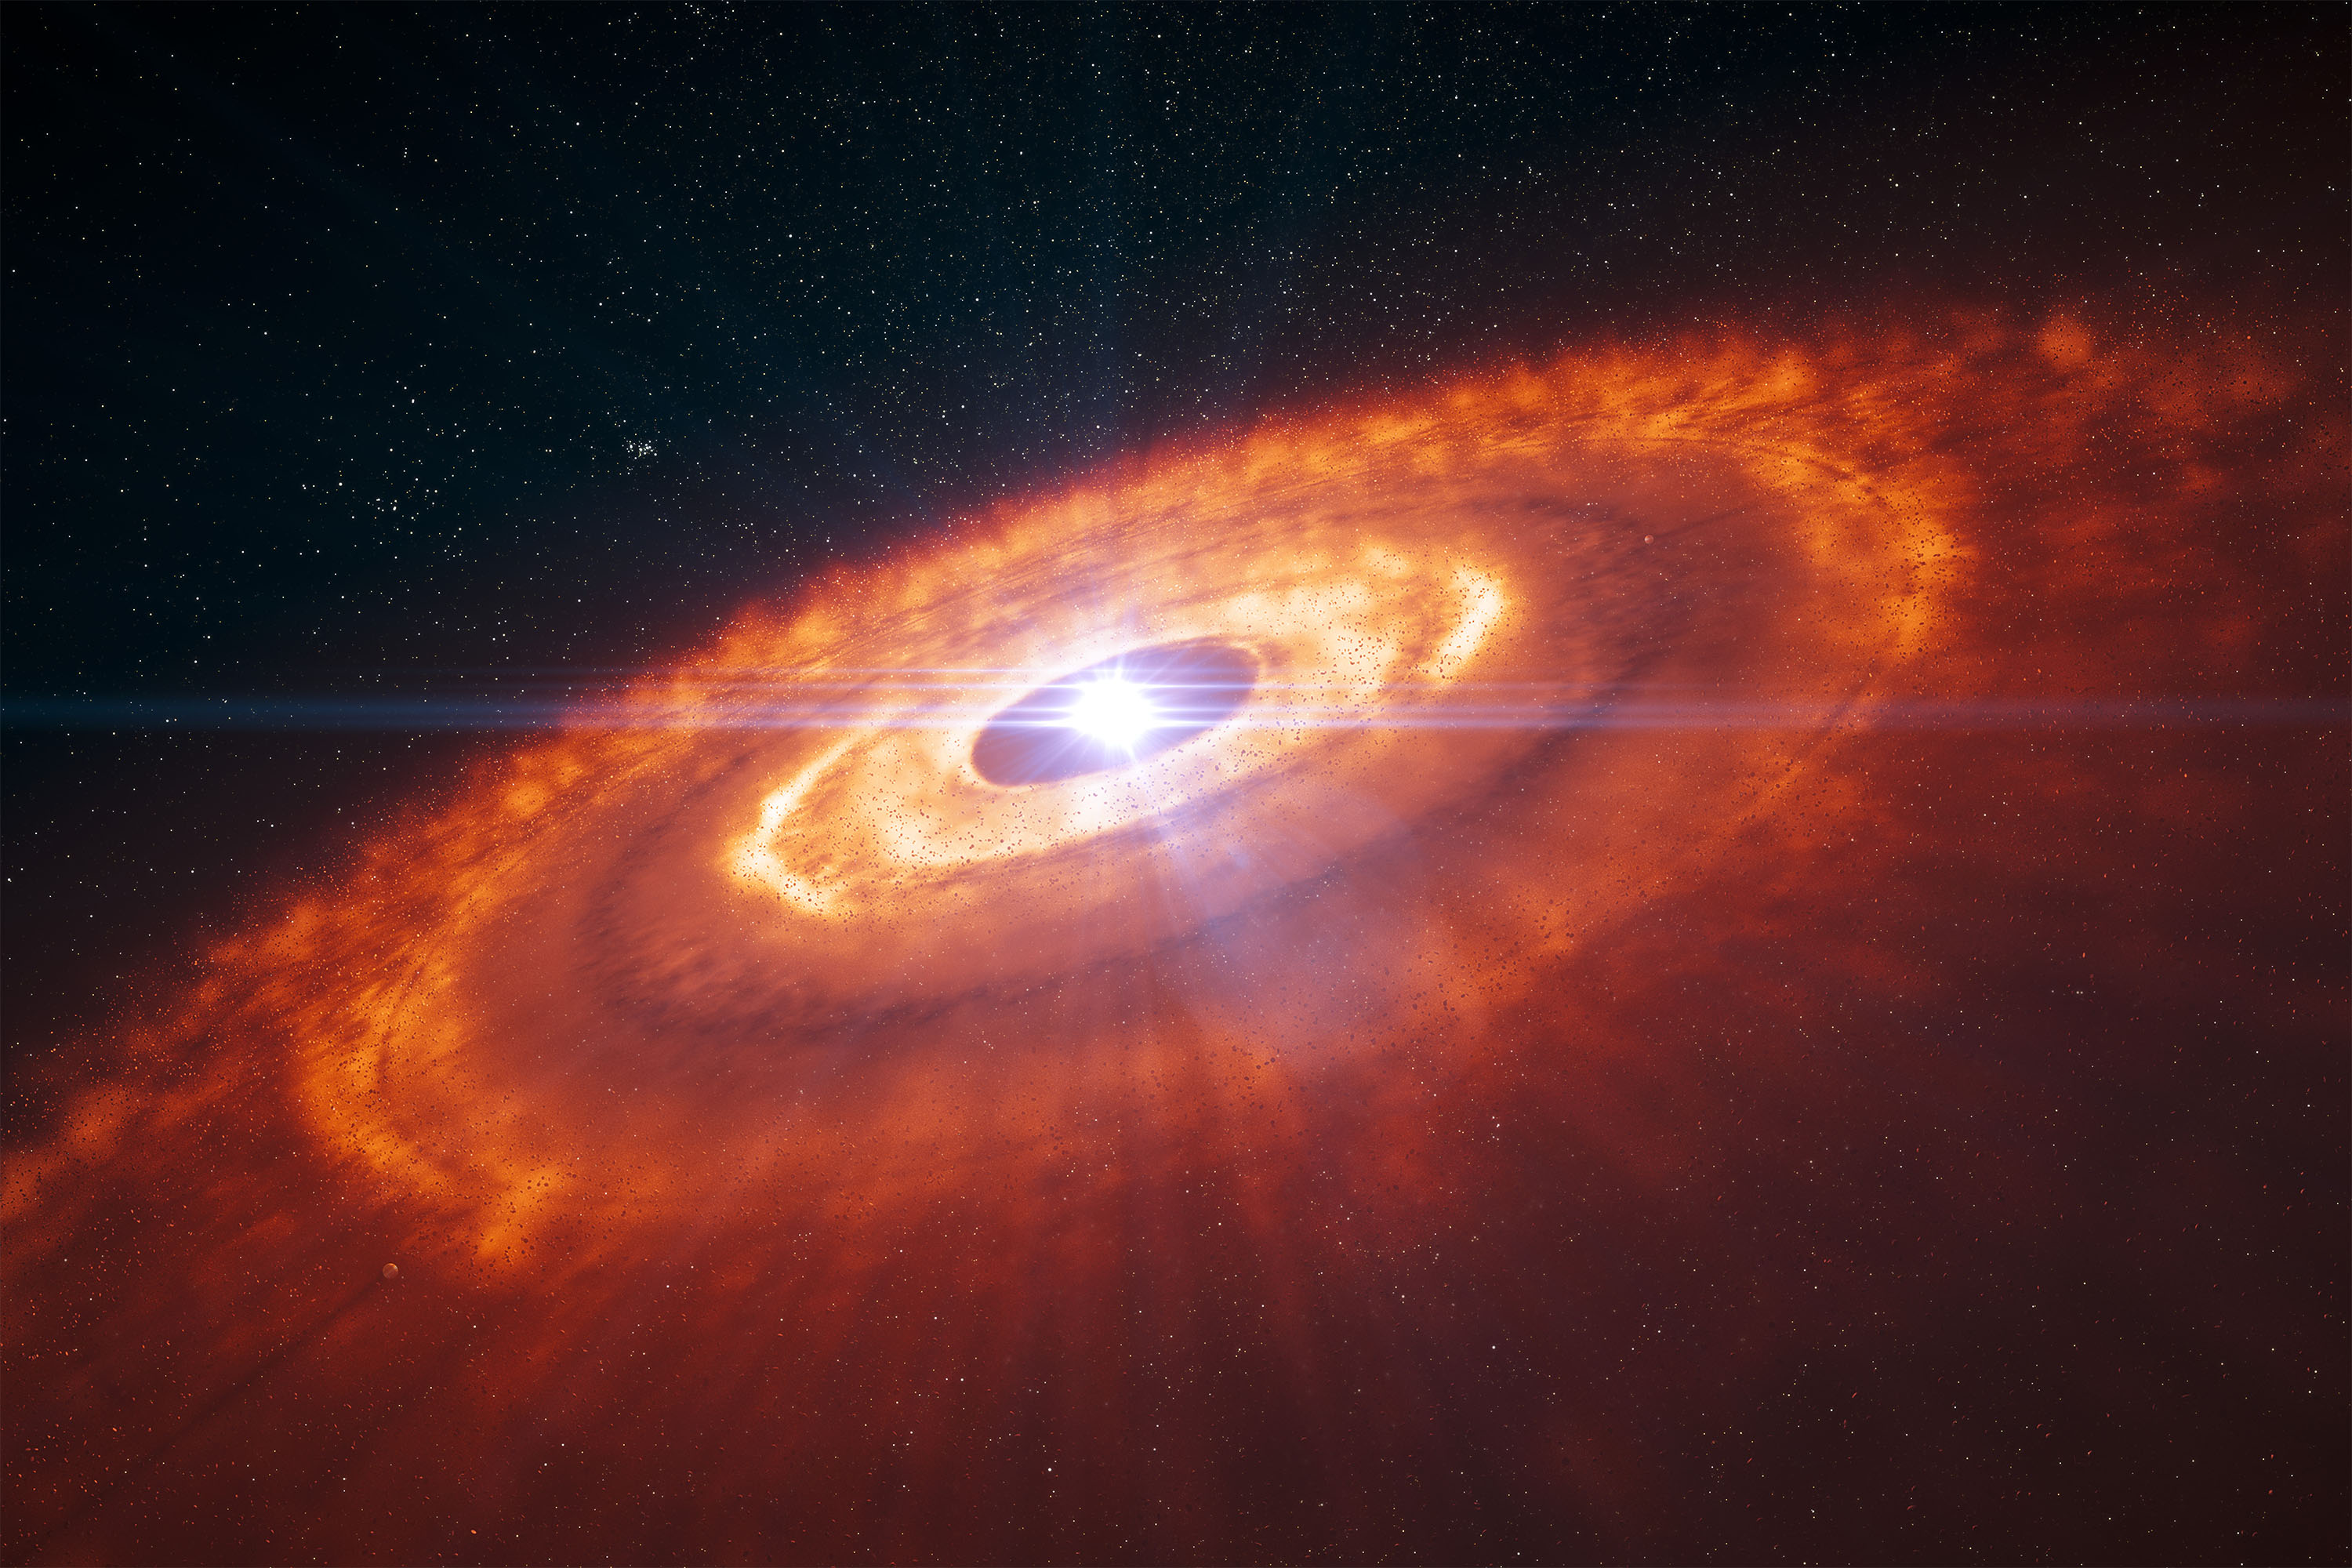 Vue d’artiste d’une jeune étoile entourée par un disque protoplanétaire dans lequel des planètes sont en train de se former. © ESO, L. Calçada